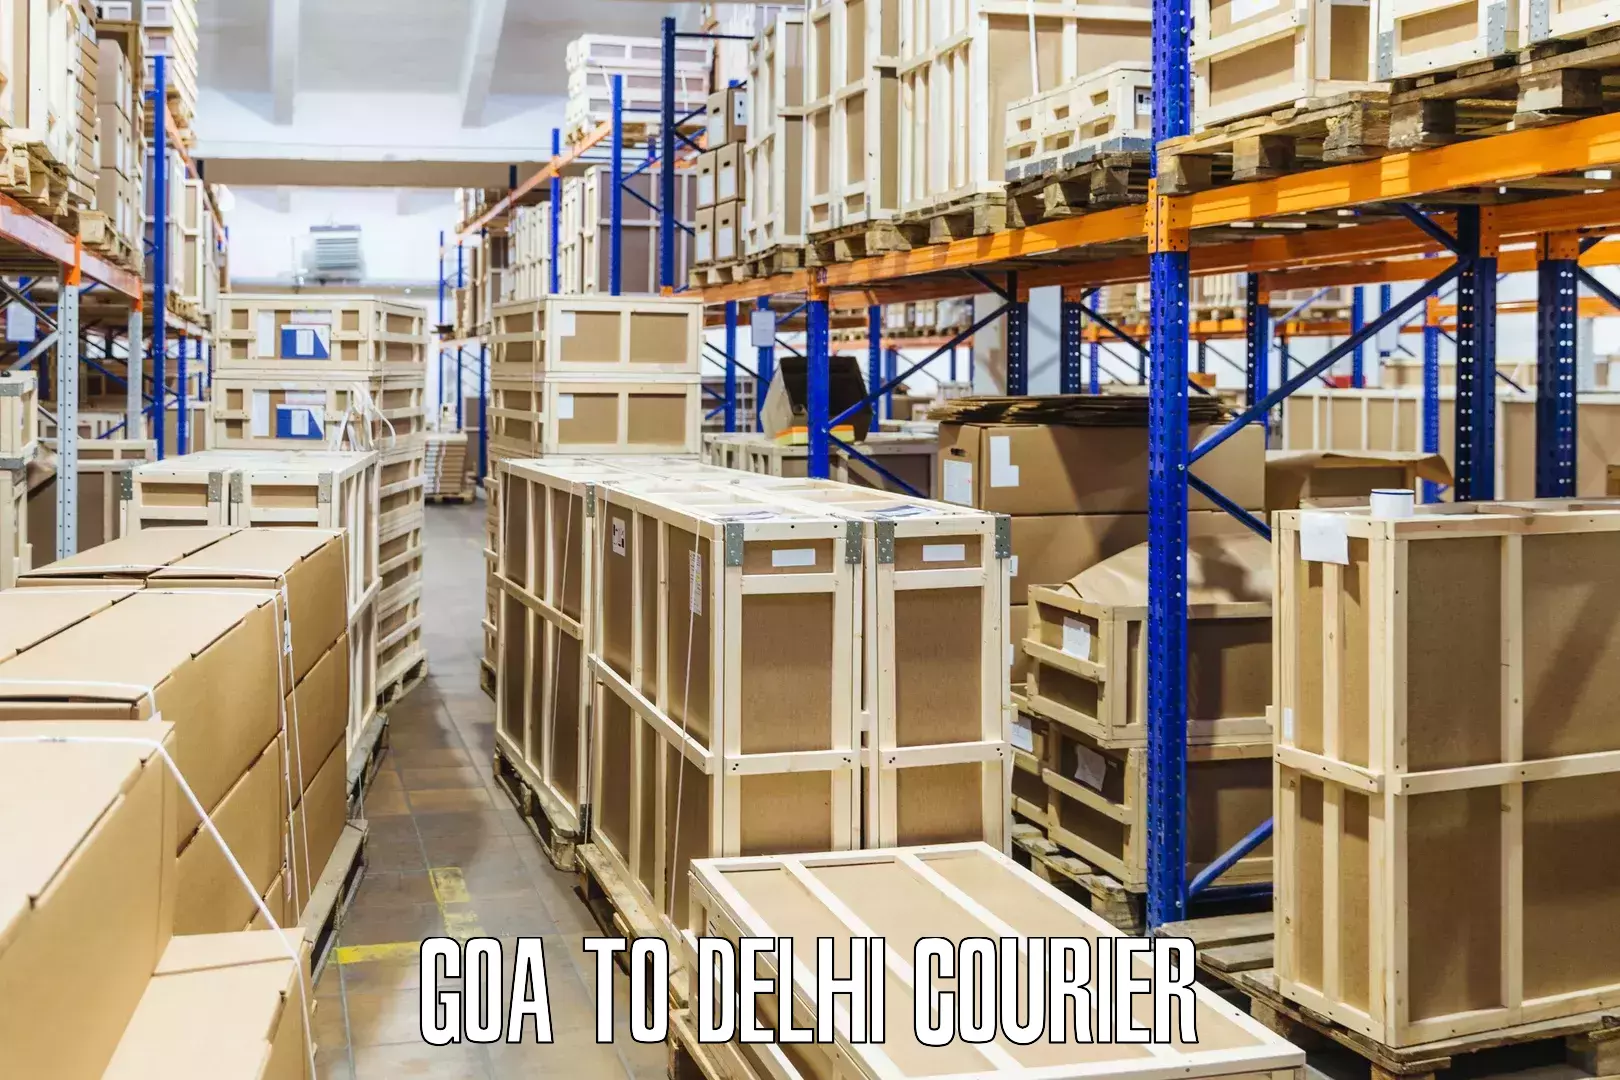 Cash on delivery service Goa to Jamia Millia Islamia New Delhi